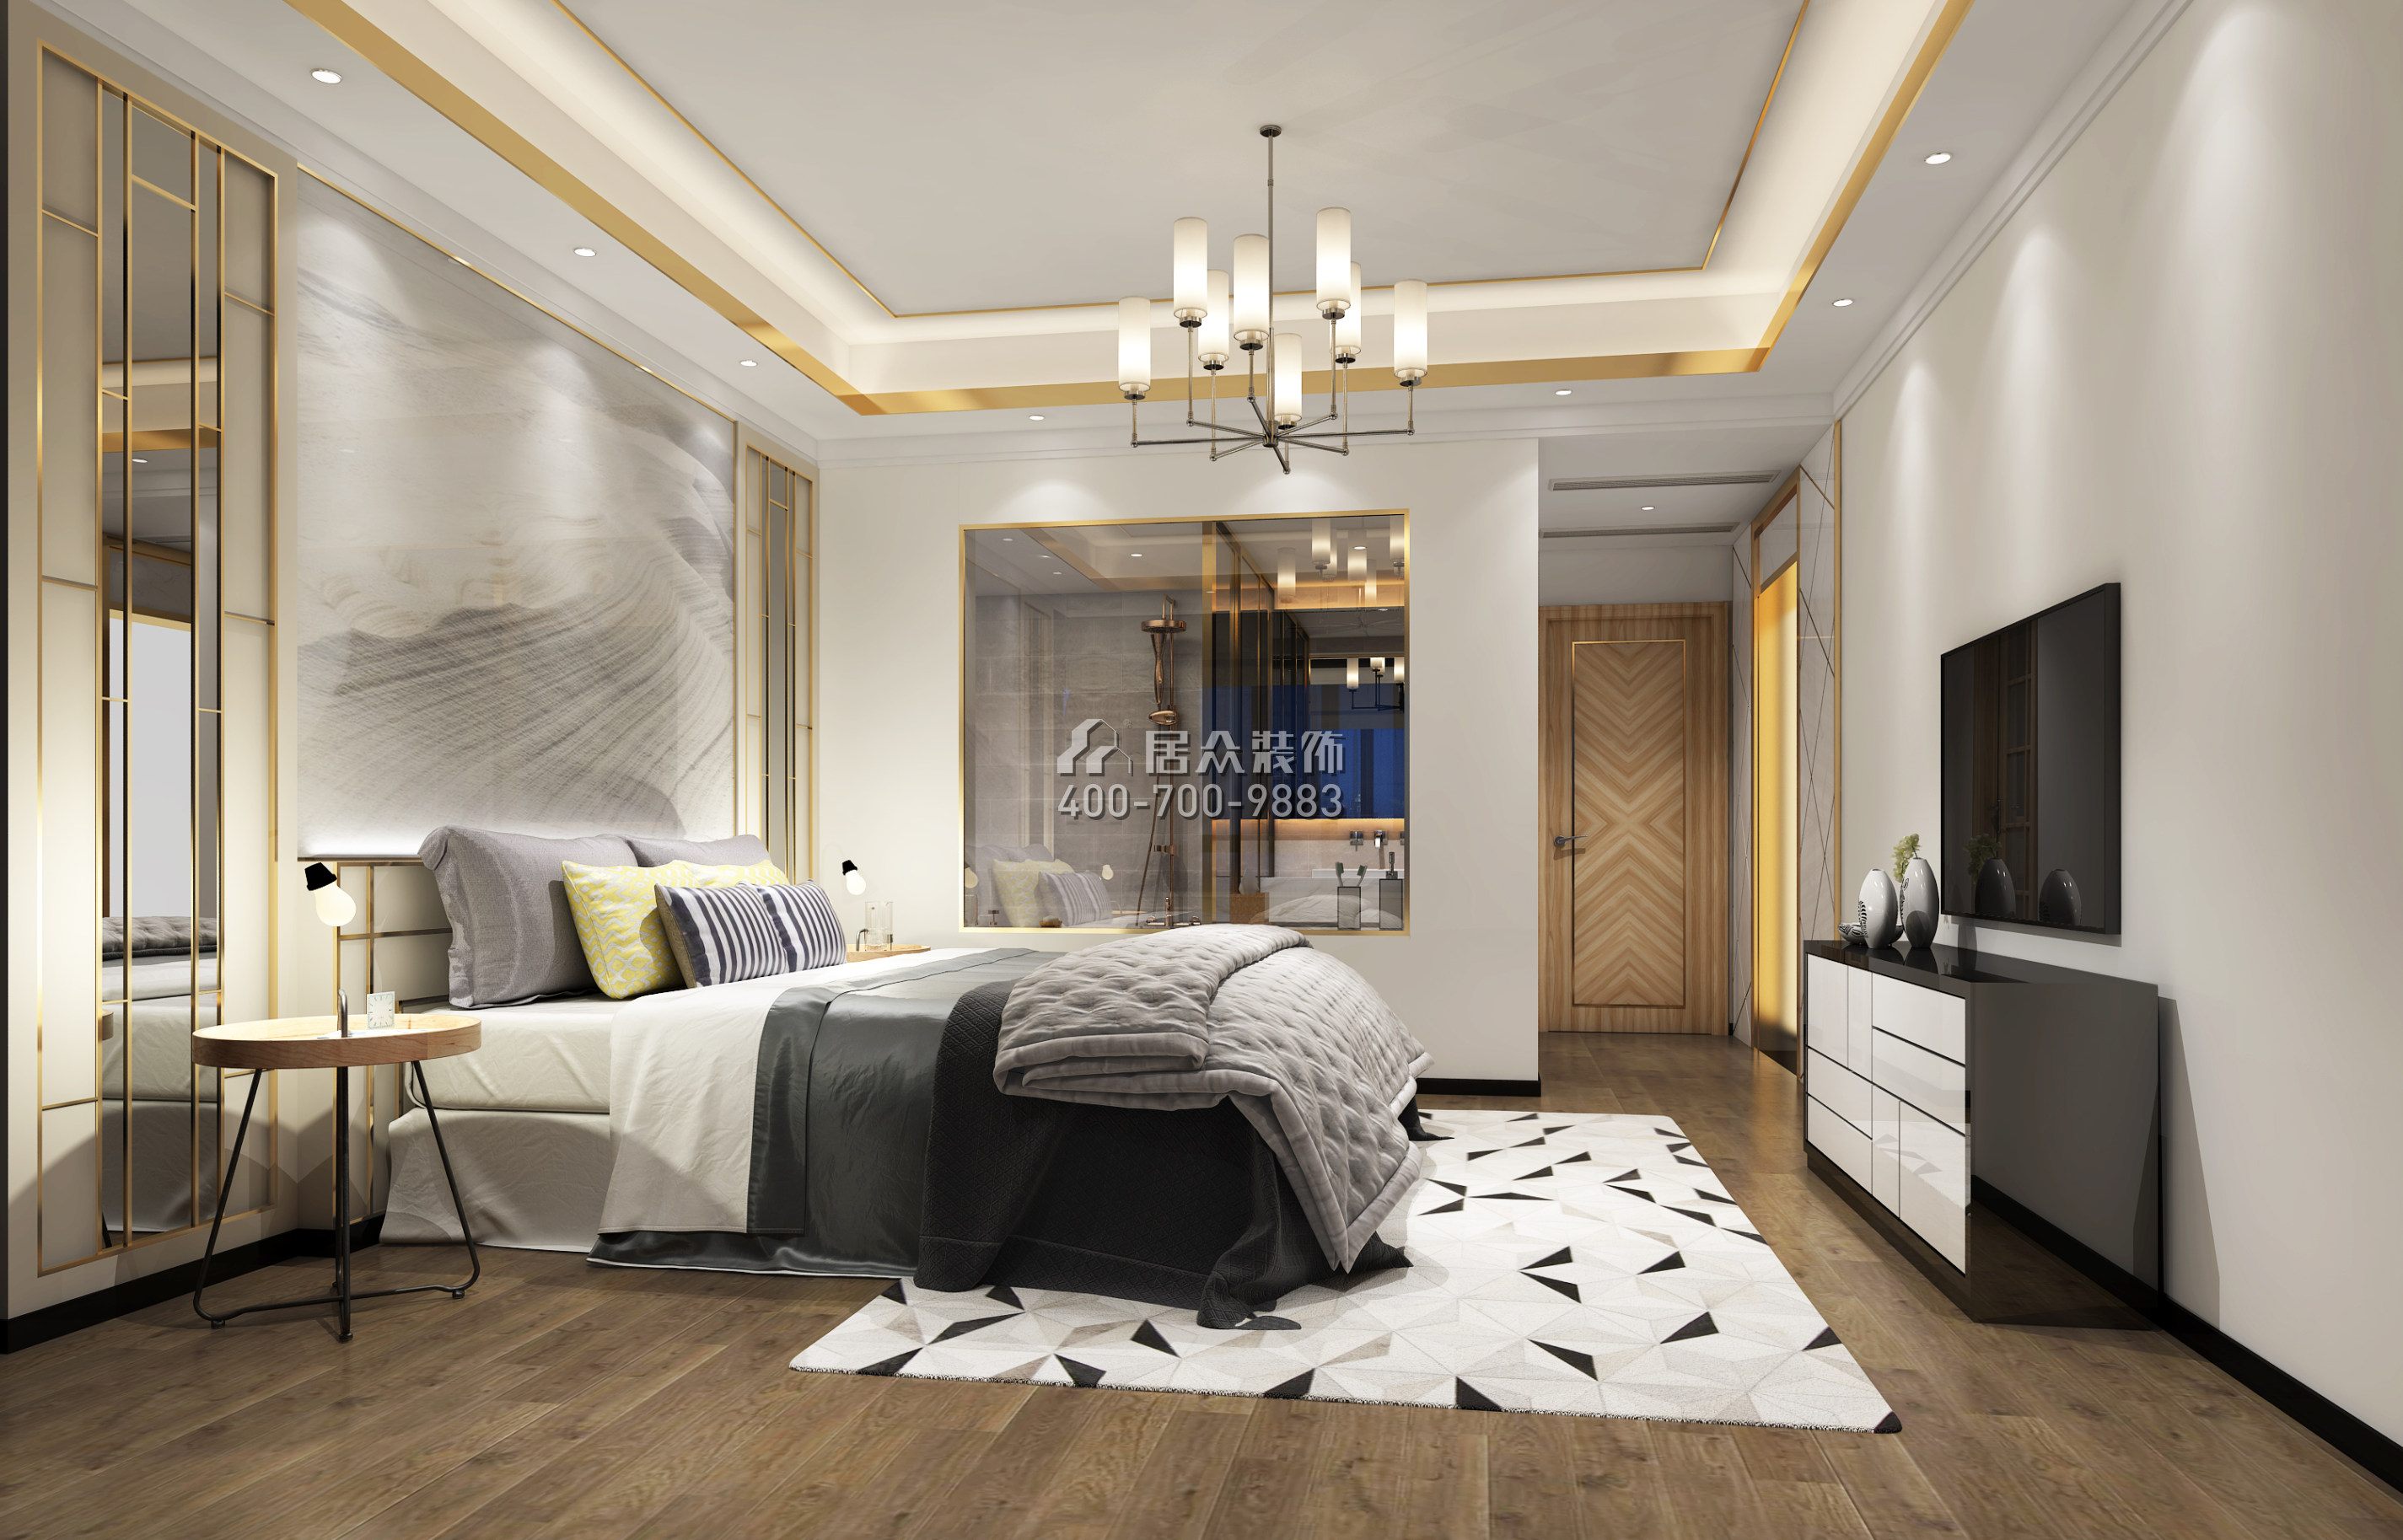 華發峰景灣168平方米現代簡約風格平層戶型臥室裝修效果圖